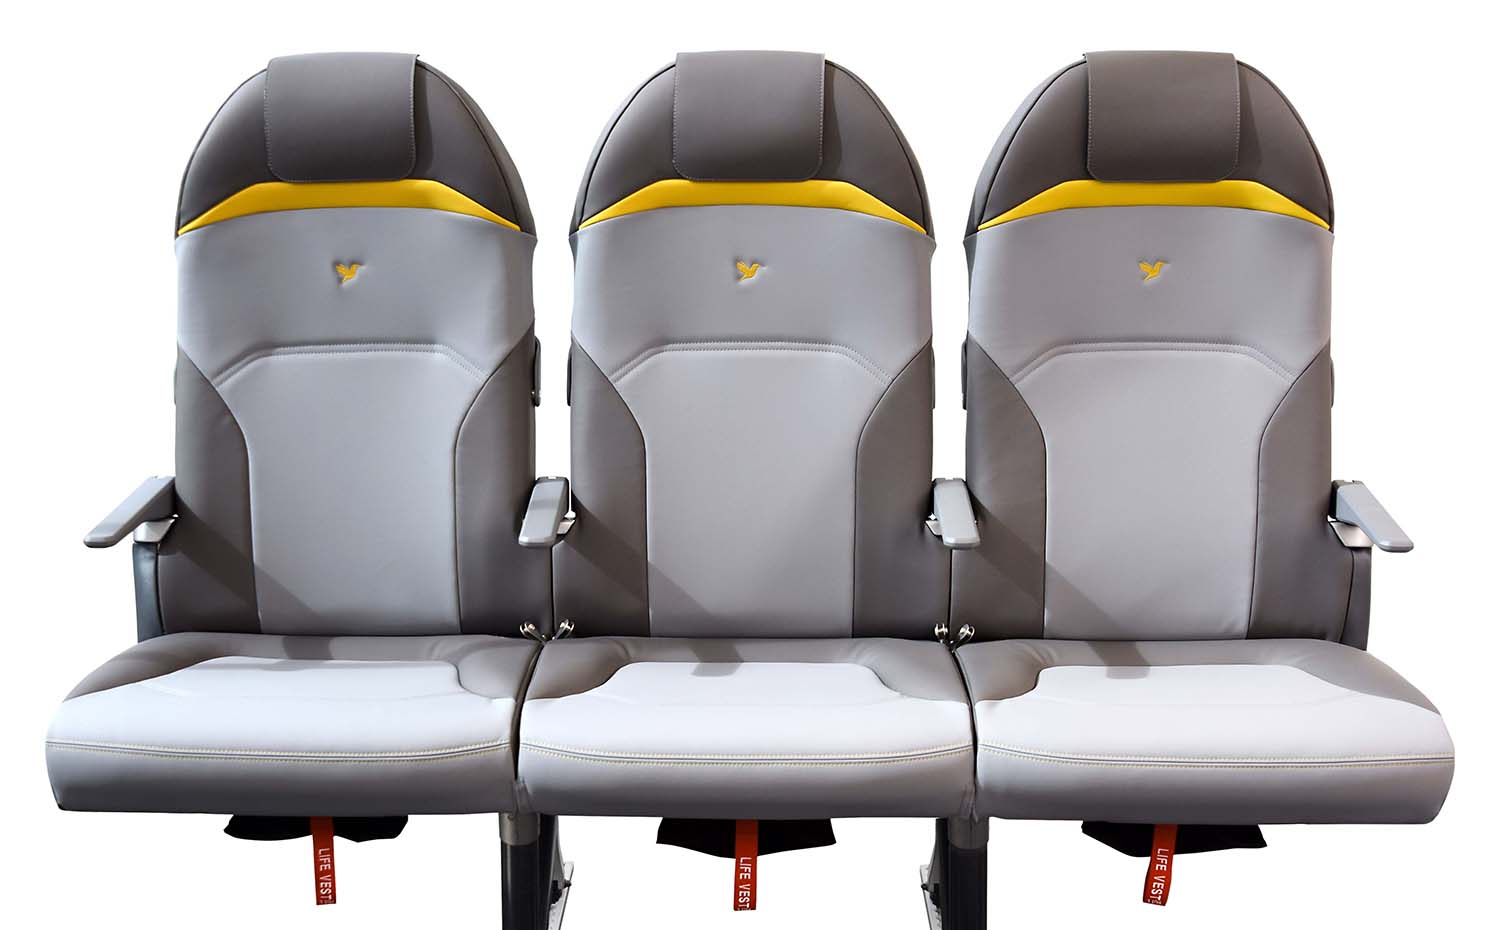 Asiento Design Lab 1. Asientos para cabina de avión Titanium Seat NEO para la firma Expliseat